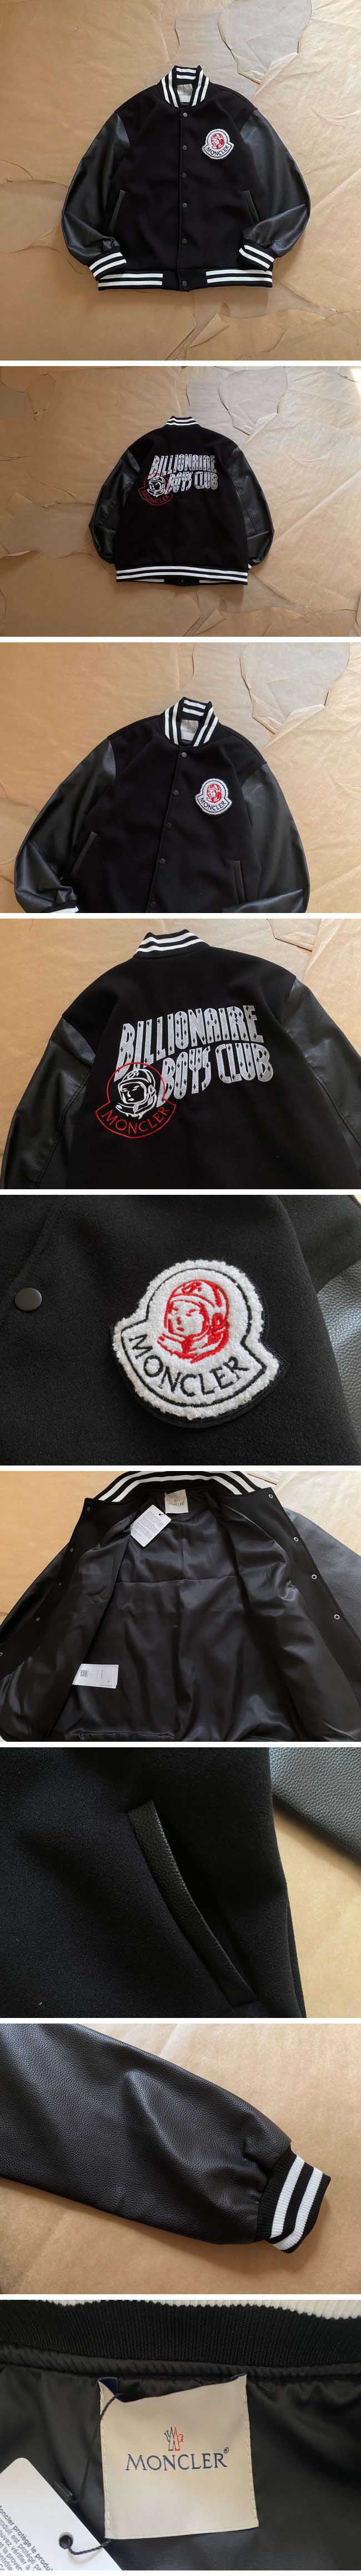 Moncler Billionaire Boys Club Jacket モンクレール ミリオネア ボーイズクラブ ジャケット